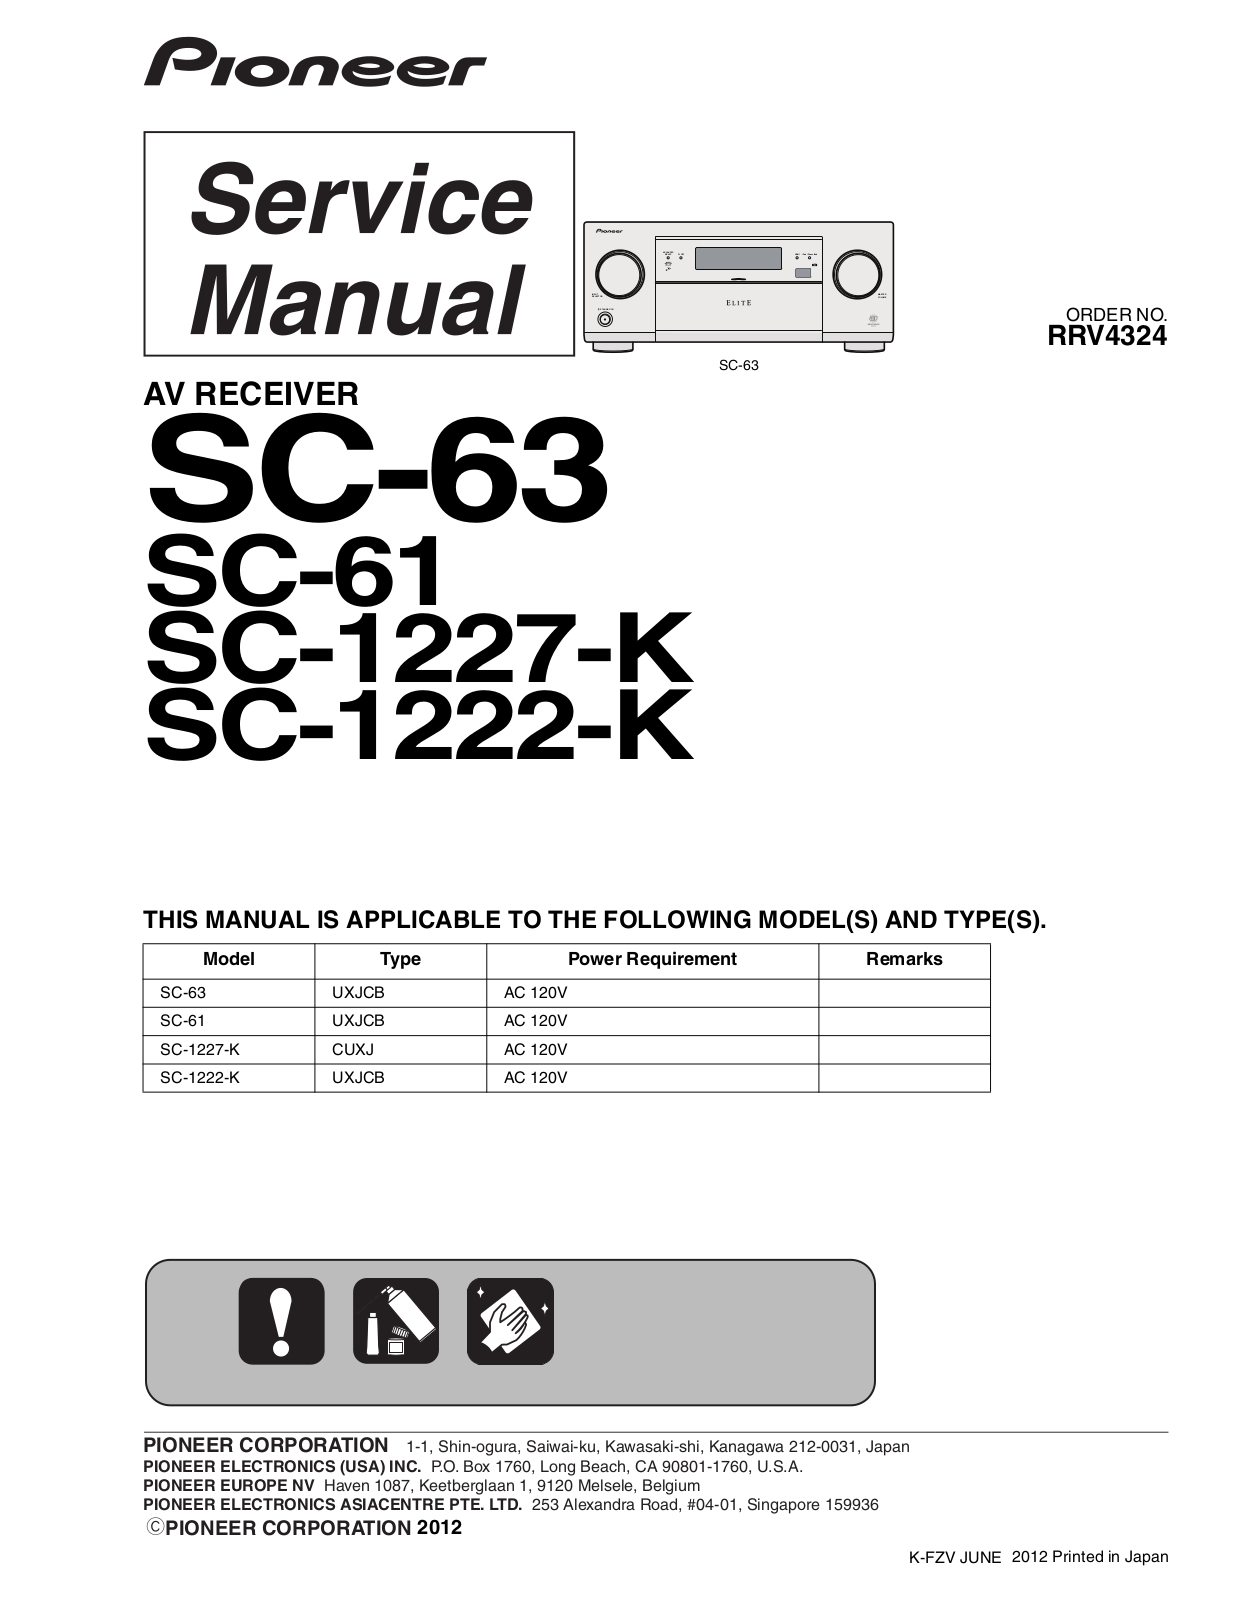 Pioneer SC-63, SC-61, SC-1227-K, SC-1222-K Service manual